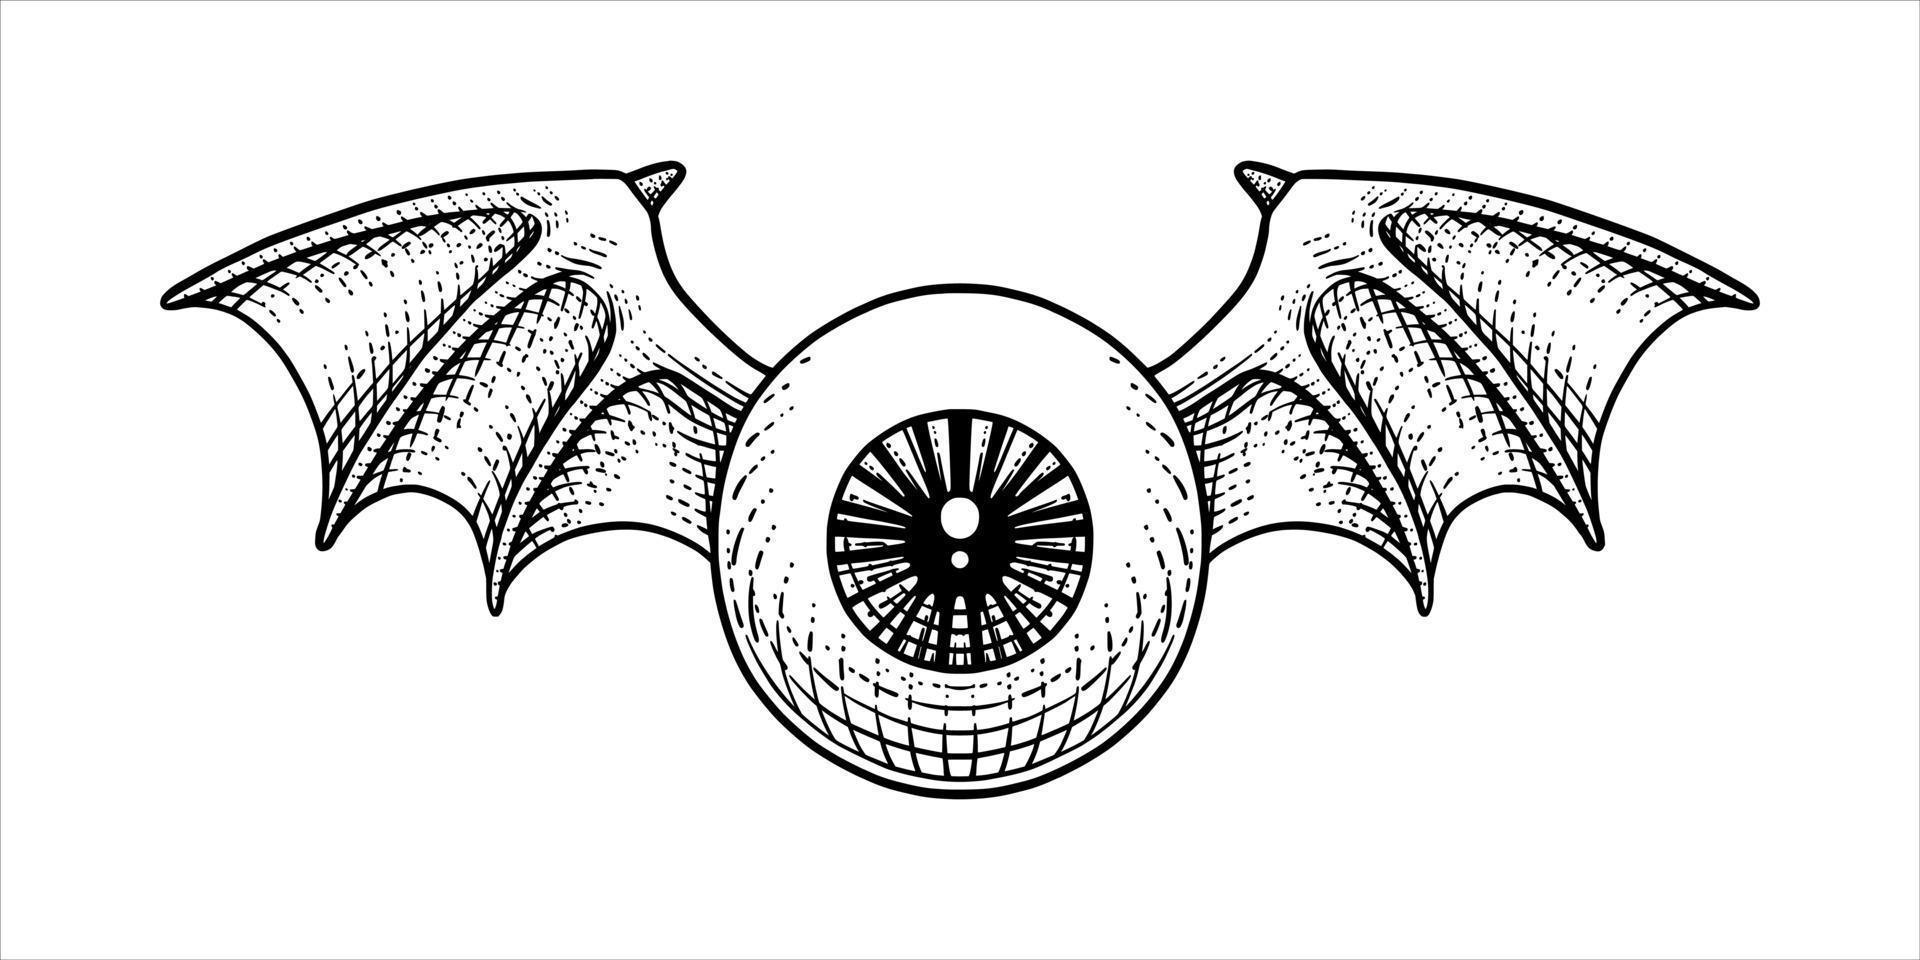 yeux à ailes de chauve-souris dessinés dans un style de gravure vecteur